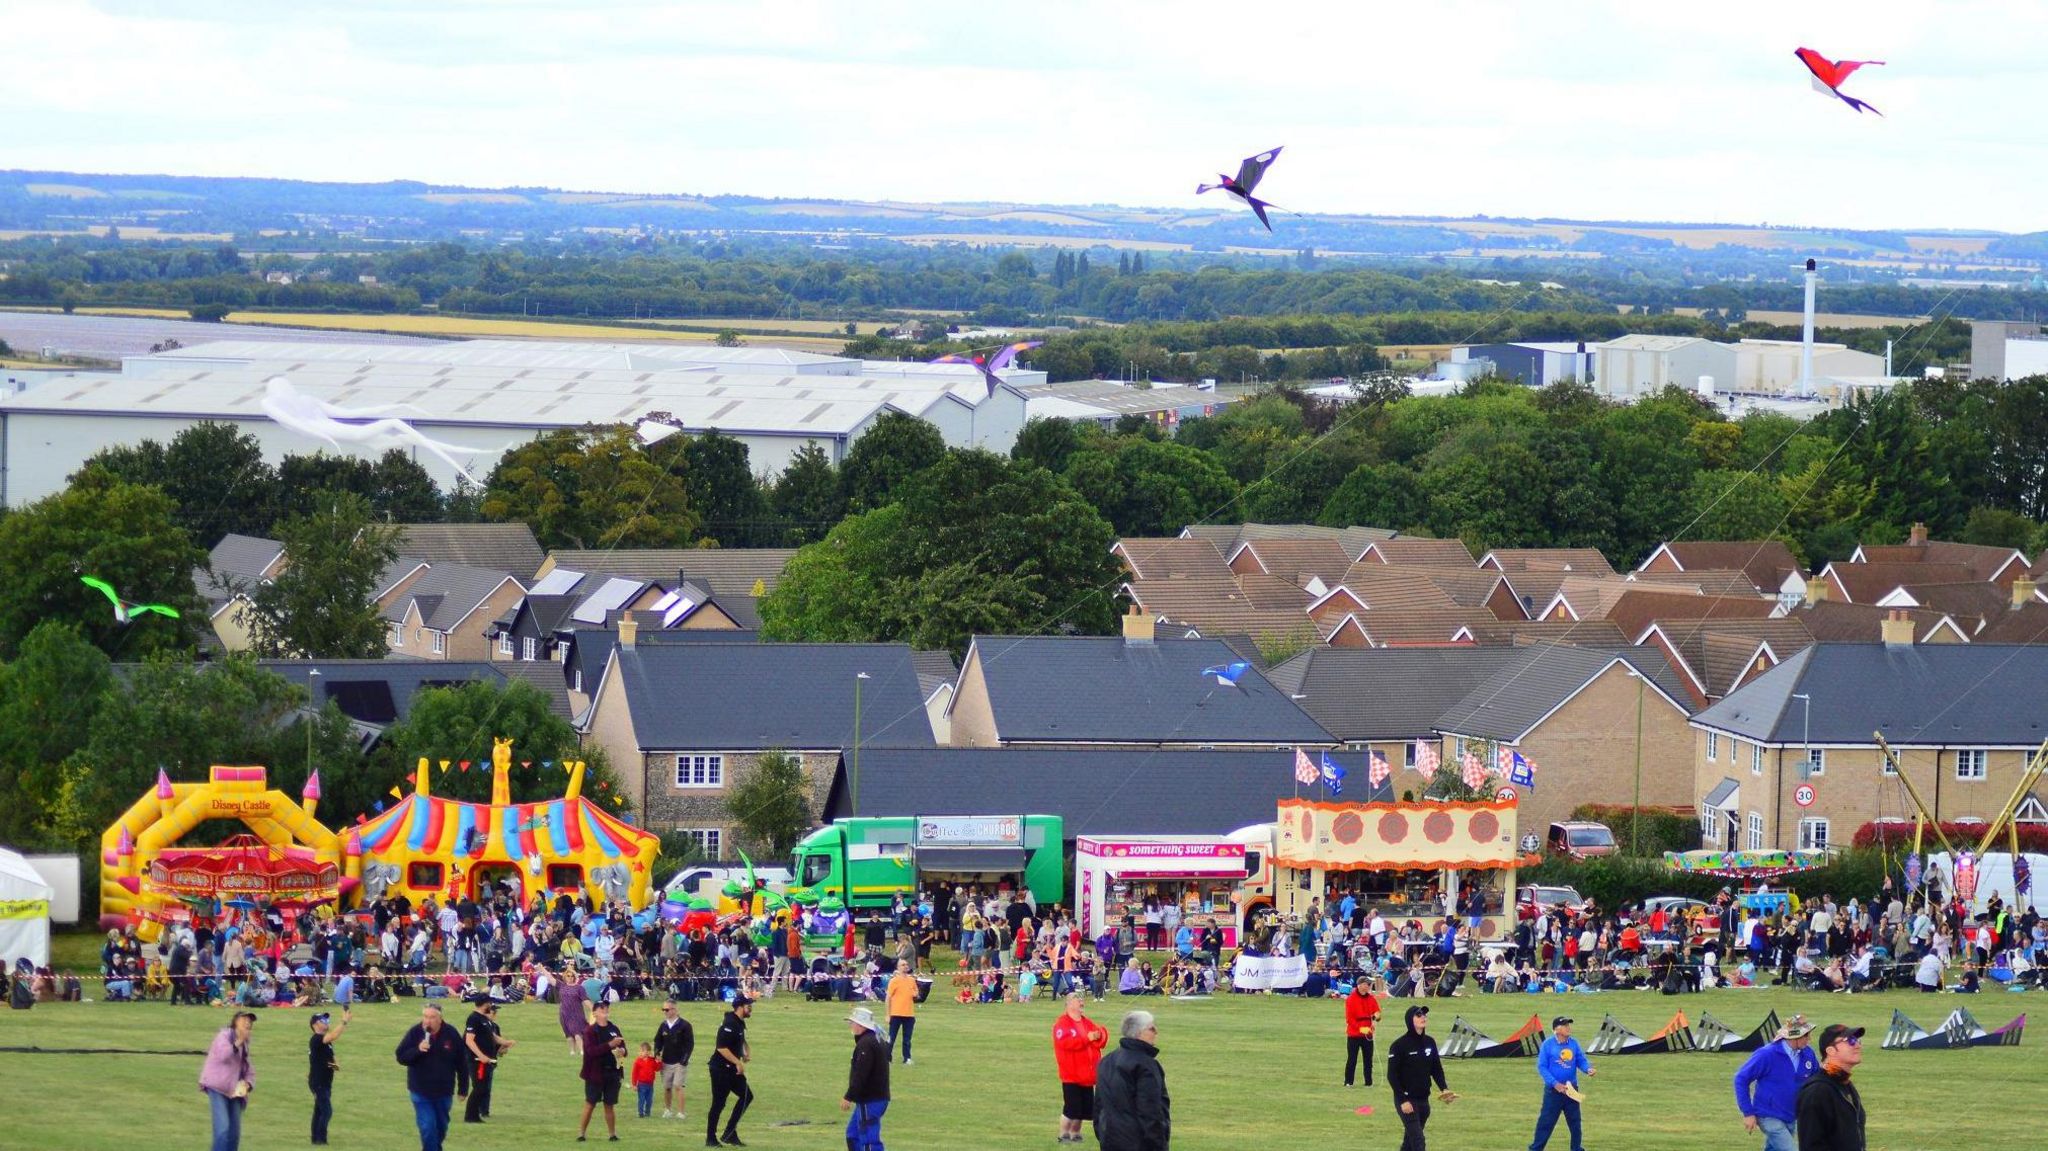 Royston Kite festival 